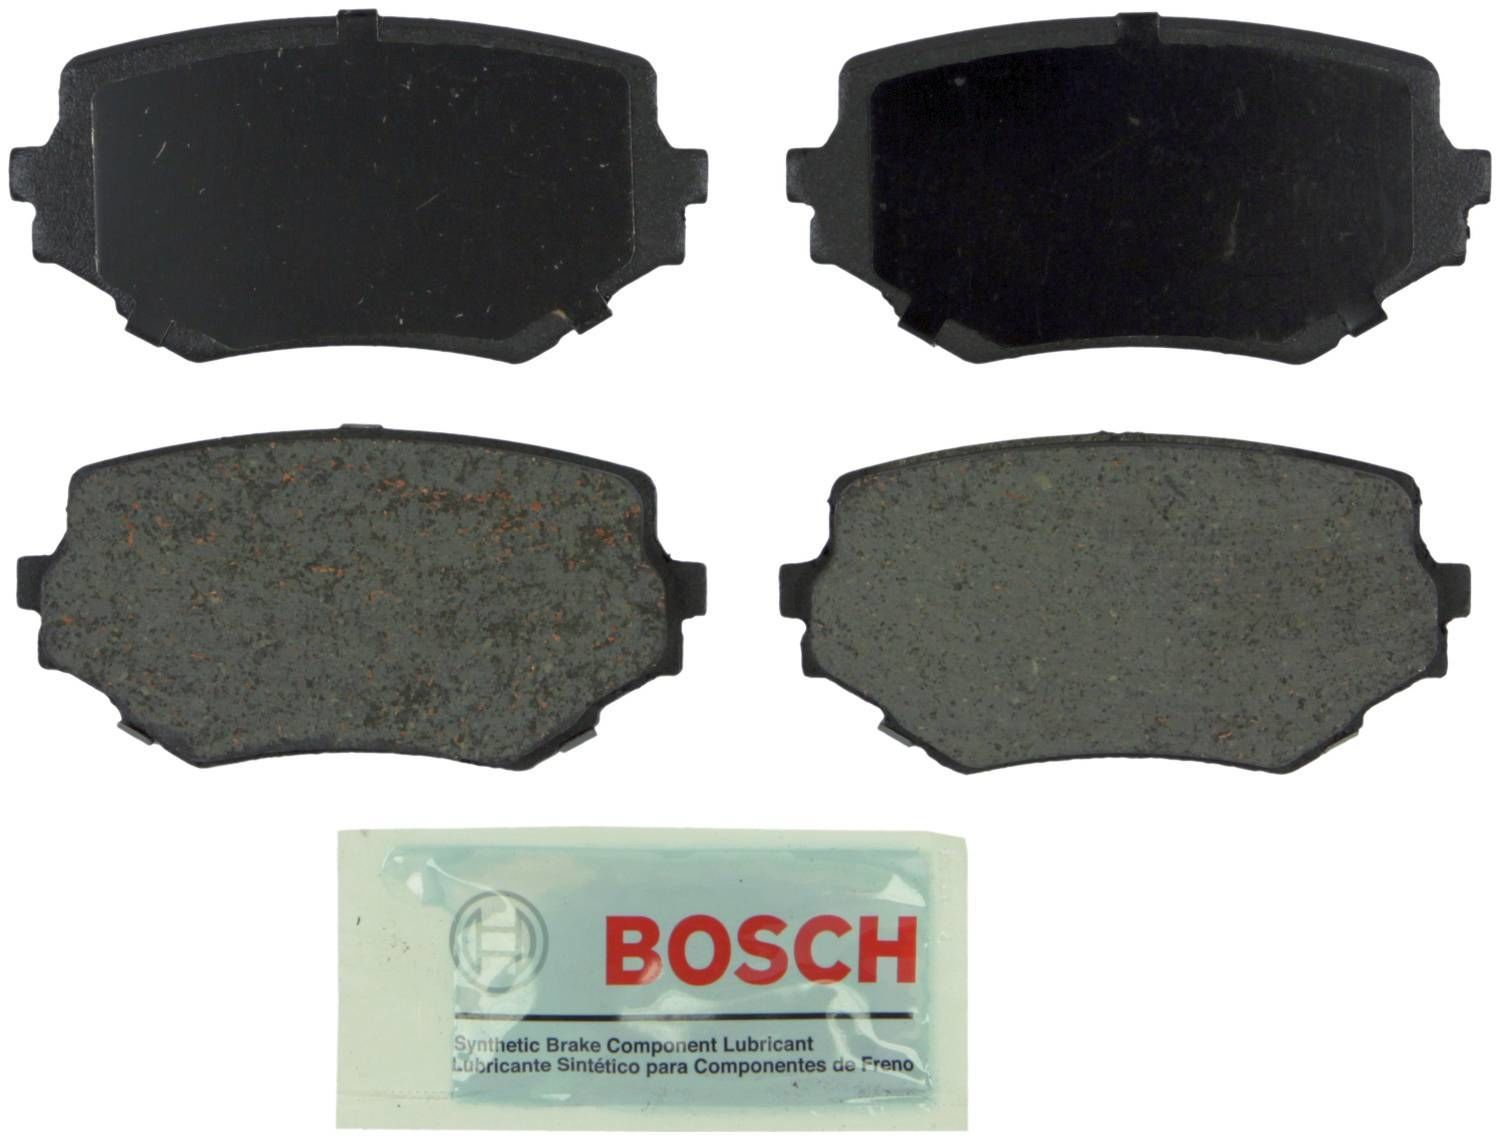 BOSCH BRAKE - Bosch Blue Ceramic Brake Pads (Front) - BQC BE680